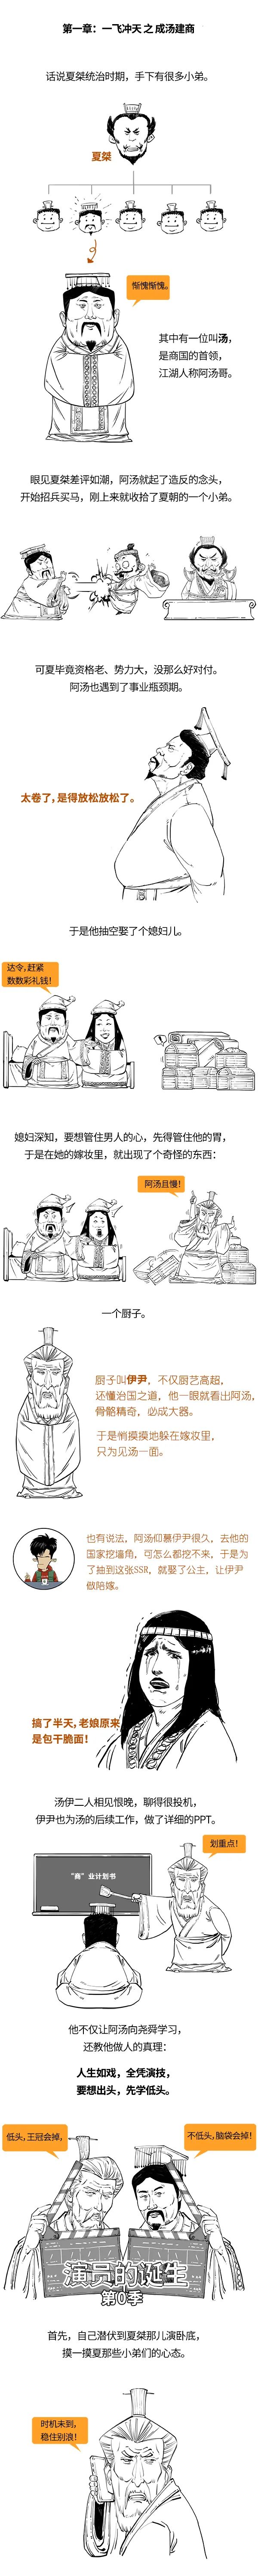 半小时漫画中国史--商朝的一生，就是鸟的一生：科普中国